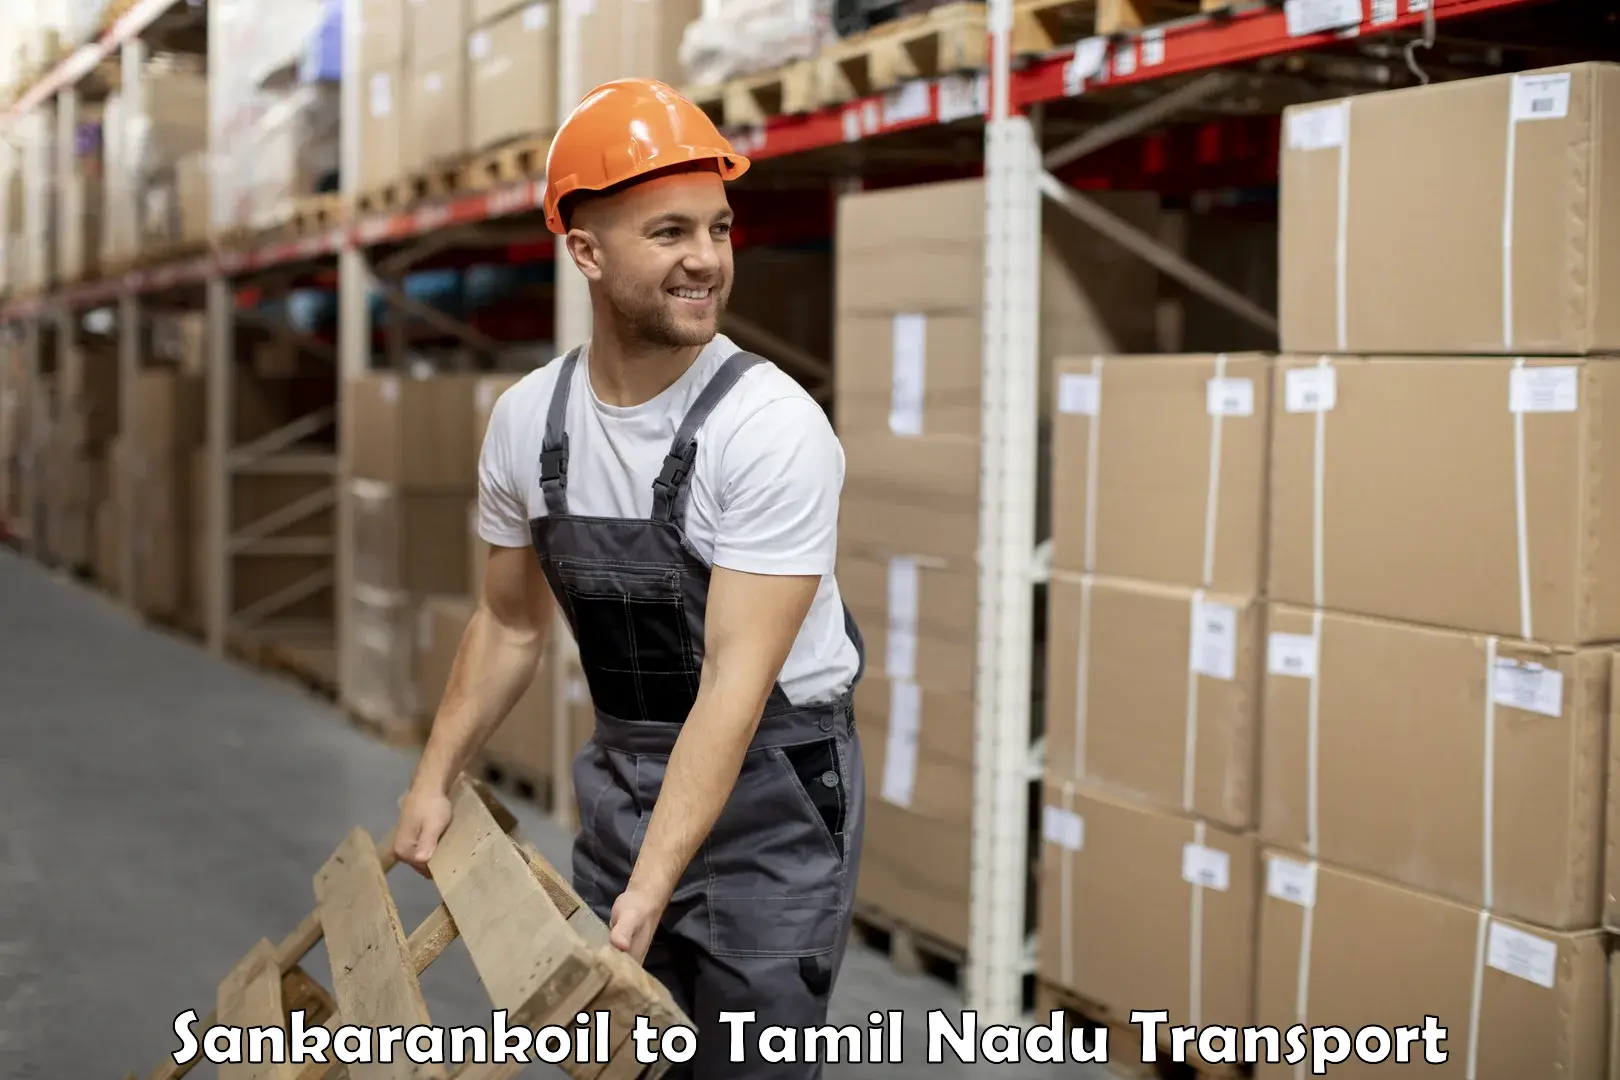 Air freight transport services Sankarankoil to Tamil Nadu